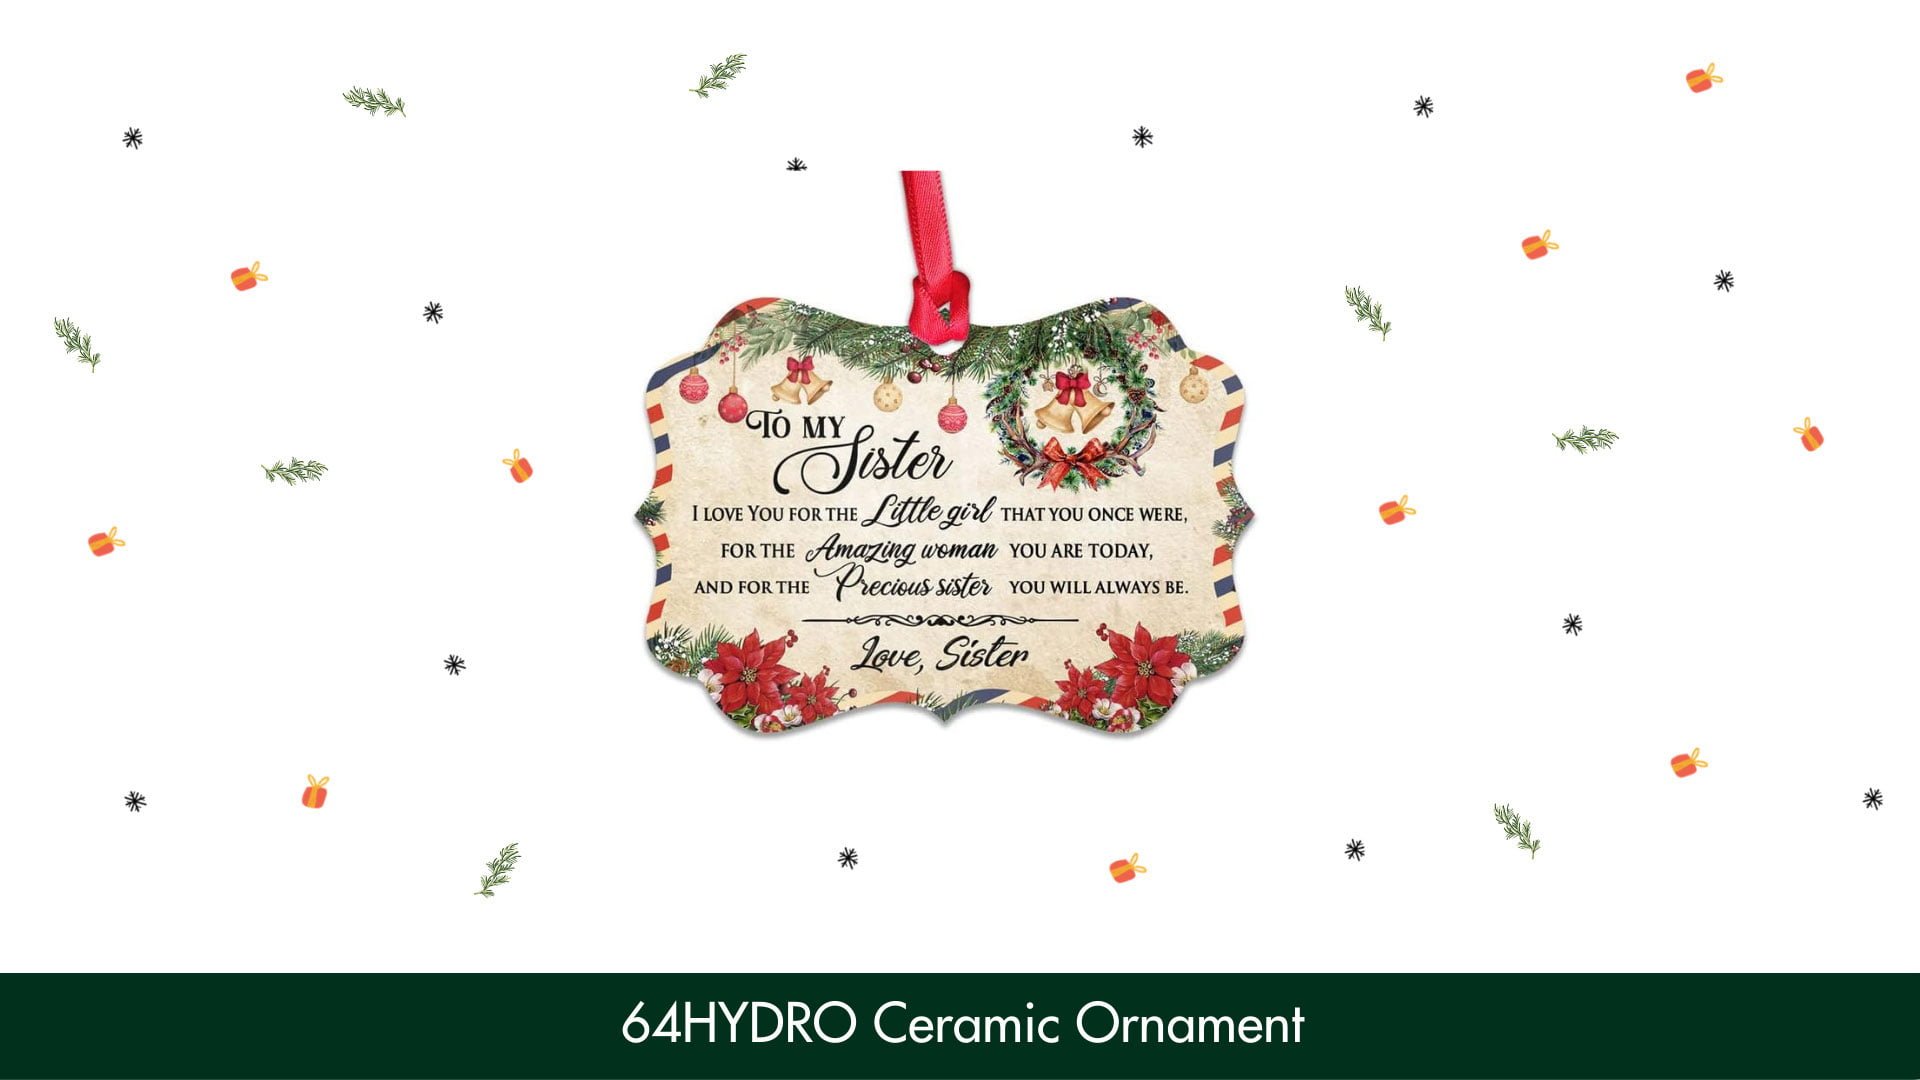 64HYDRO Ceramic Ornament